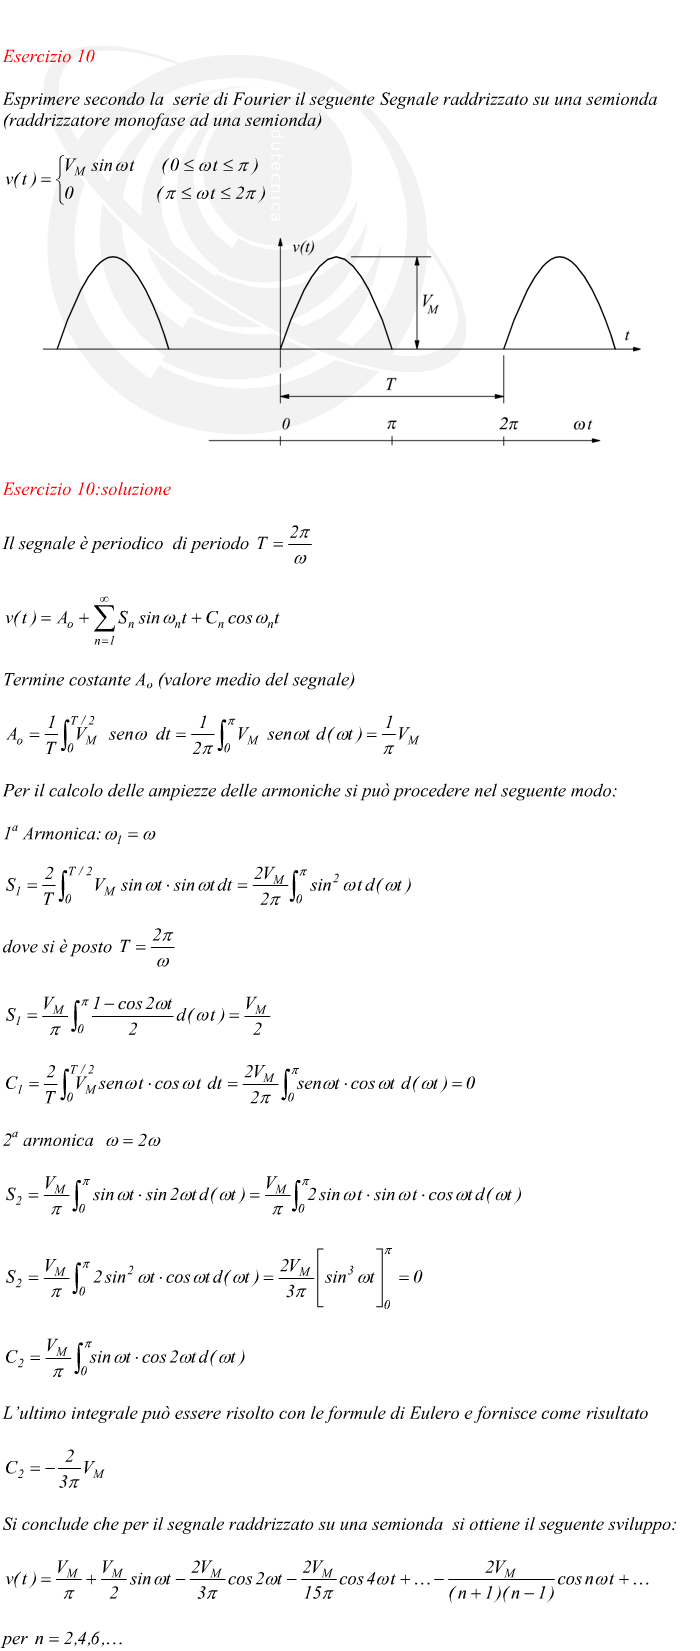 Il segnale è periodico  di periodo  Termine costante Ao (valore medio del segnale) Per il calcolo delle ampiezze delle armoniche si può procedere nel seguente modo: 1a Armonica: dove si è posto 2a armonica L’ultimo integrale può essere risolto con le formule di Eulero e fornisce come risultato Si conclude che per il segnale raddrizzato su una semionda  si ottiene il seguente sviluppo